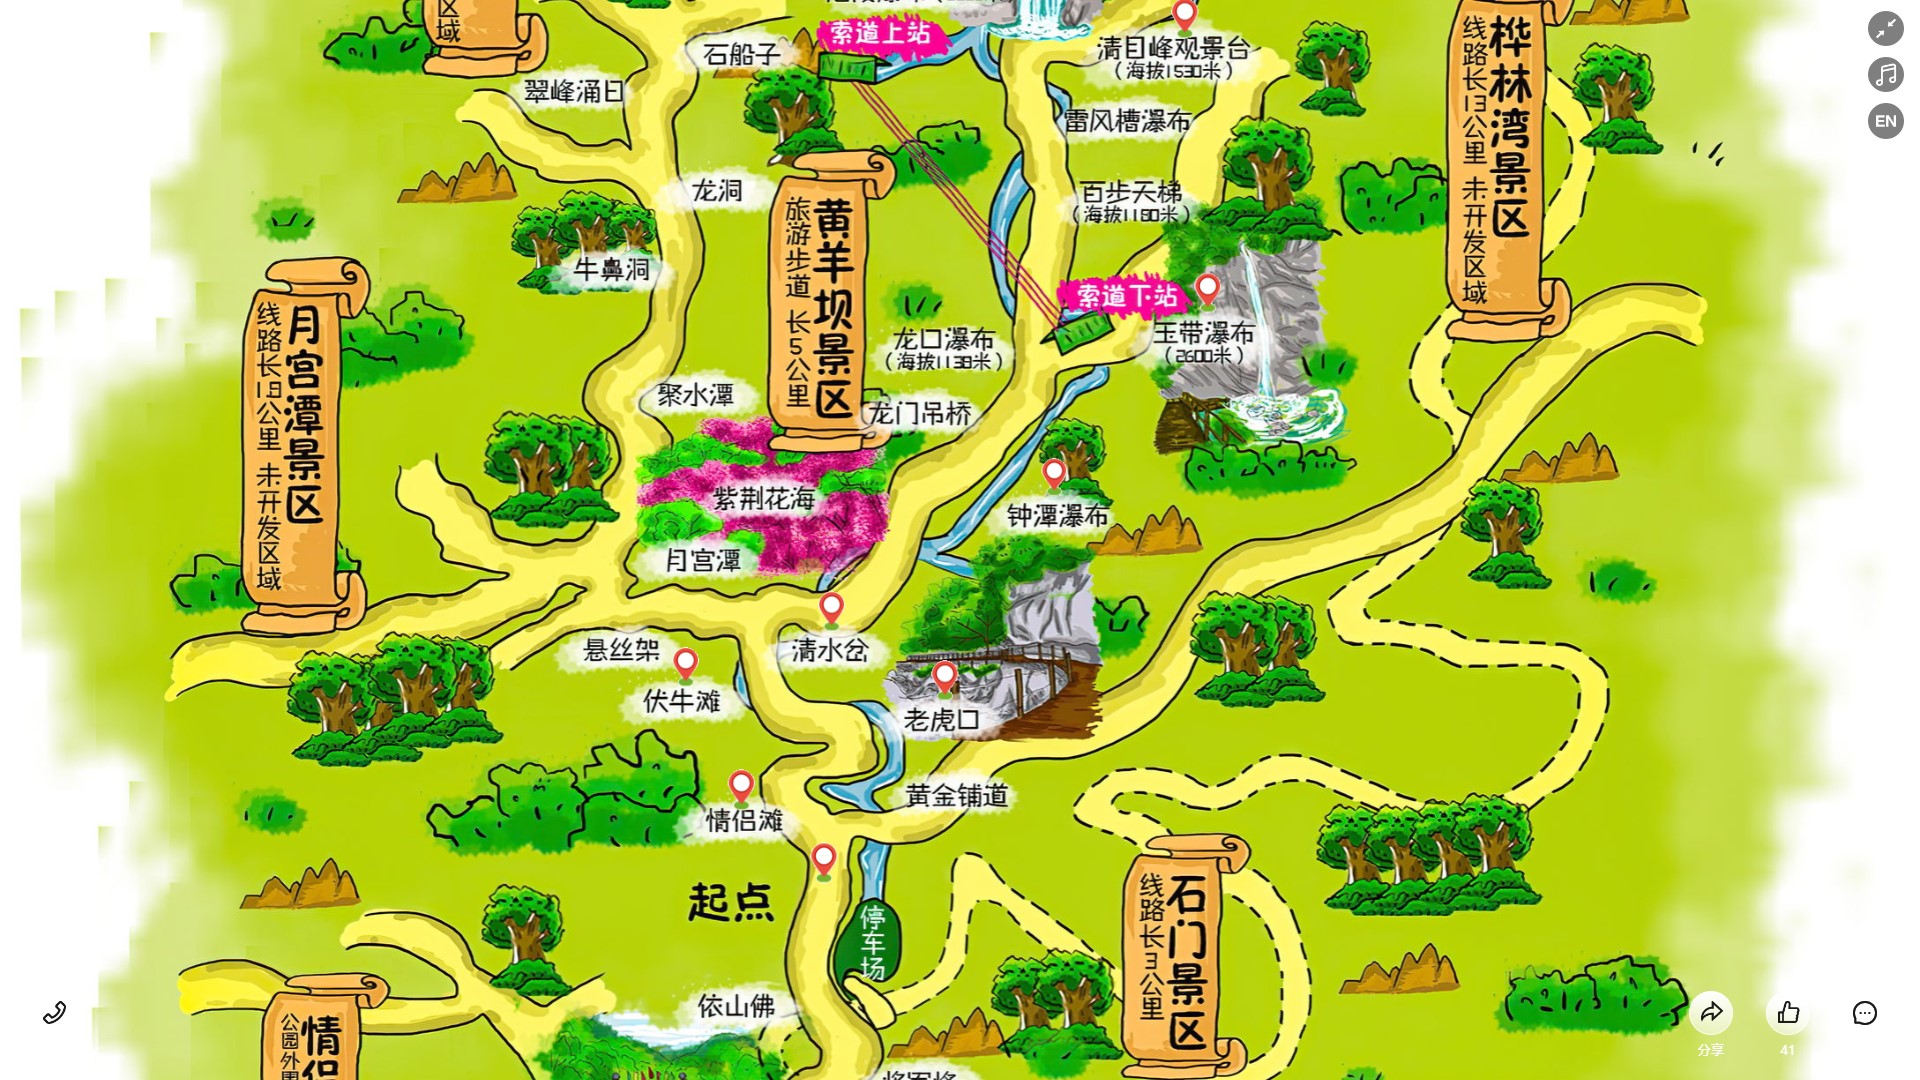 康县景区导览系统